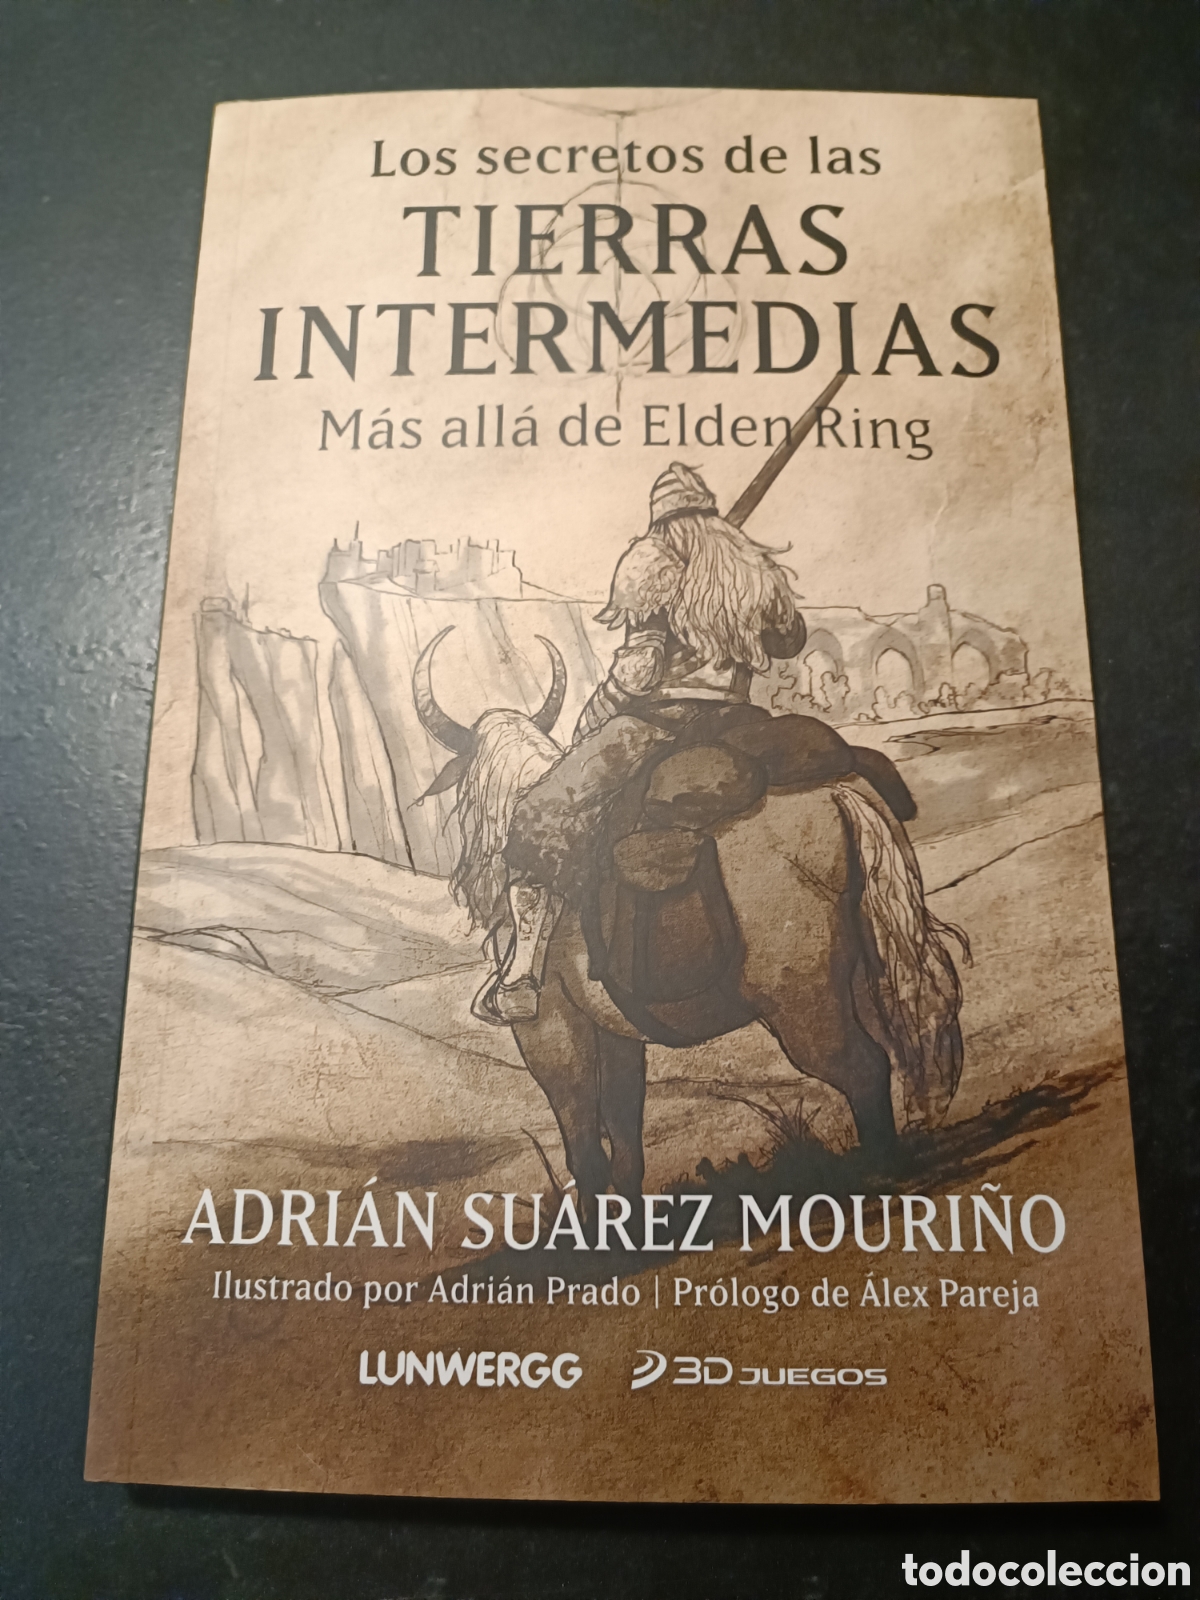 Así es el LIBRO Los secretos de las TIERRAS INTERMEDIAS - ELDEN RING - En  4K 